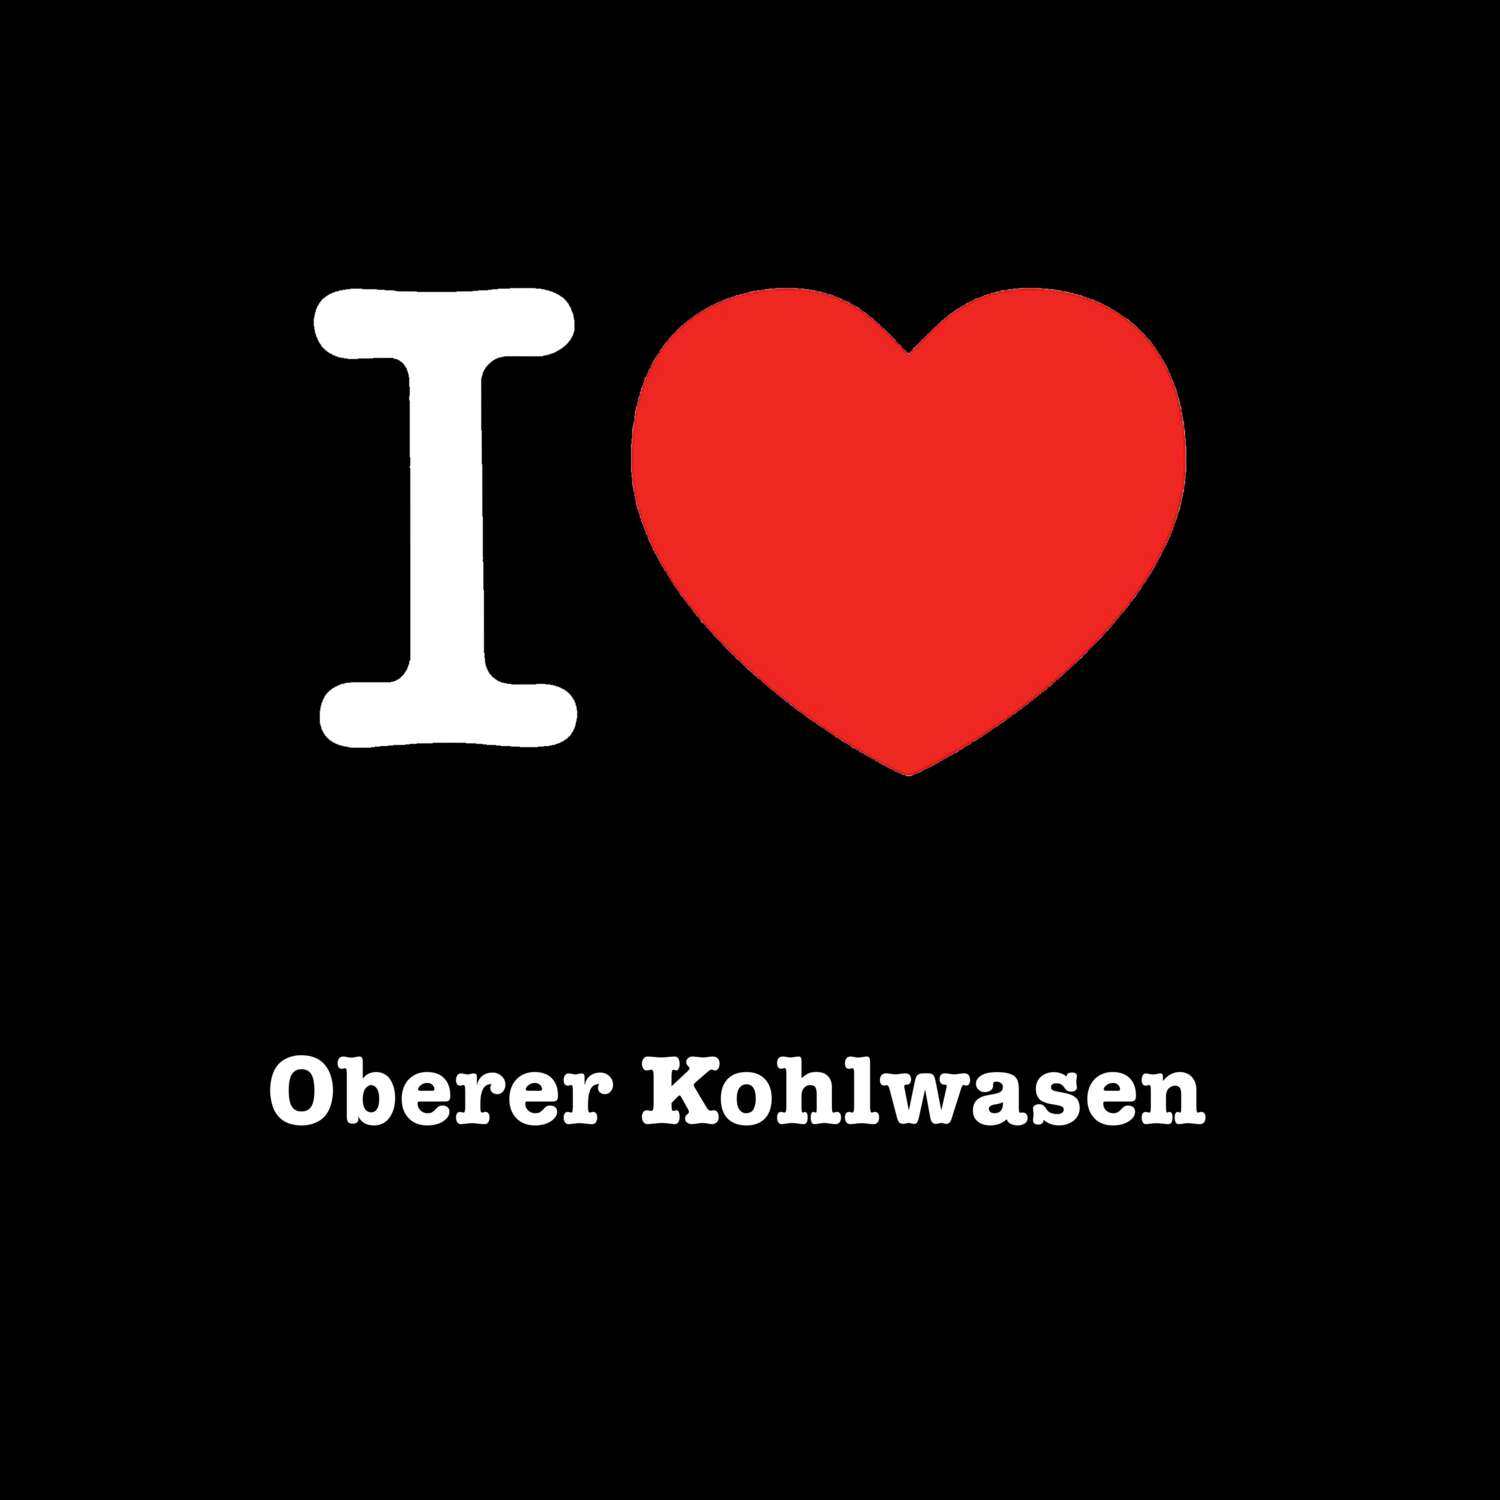 Oberer Kohlwasen T-Shirt »I love«